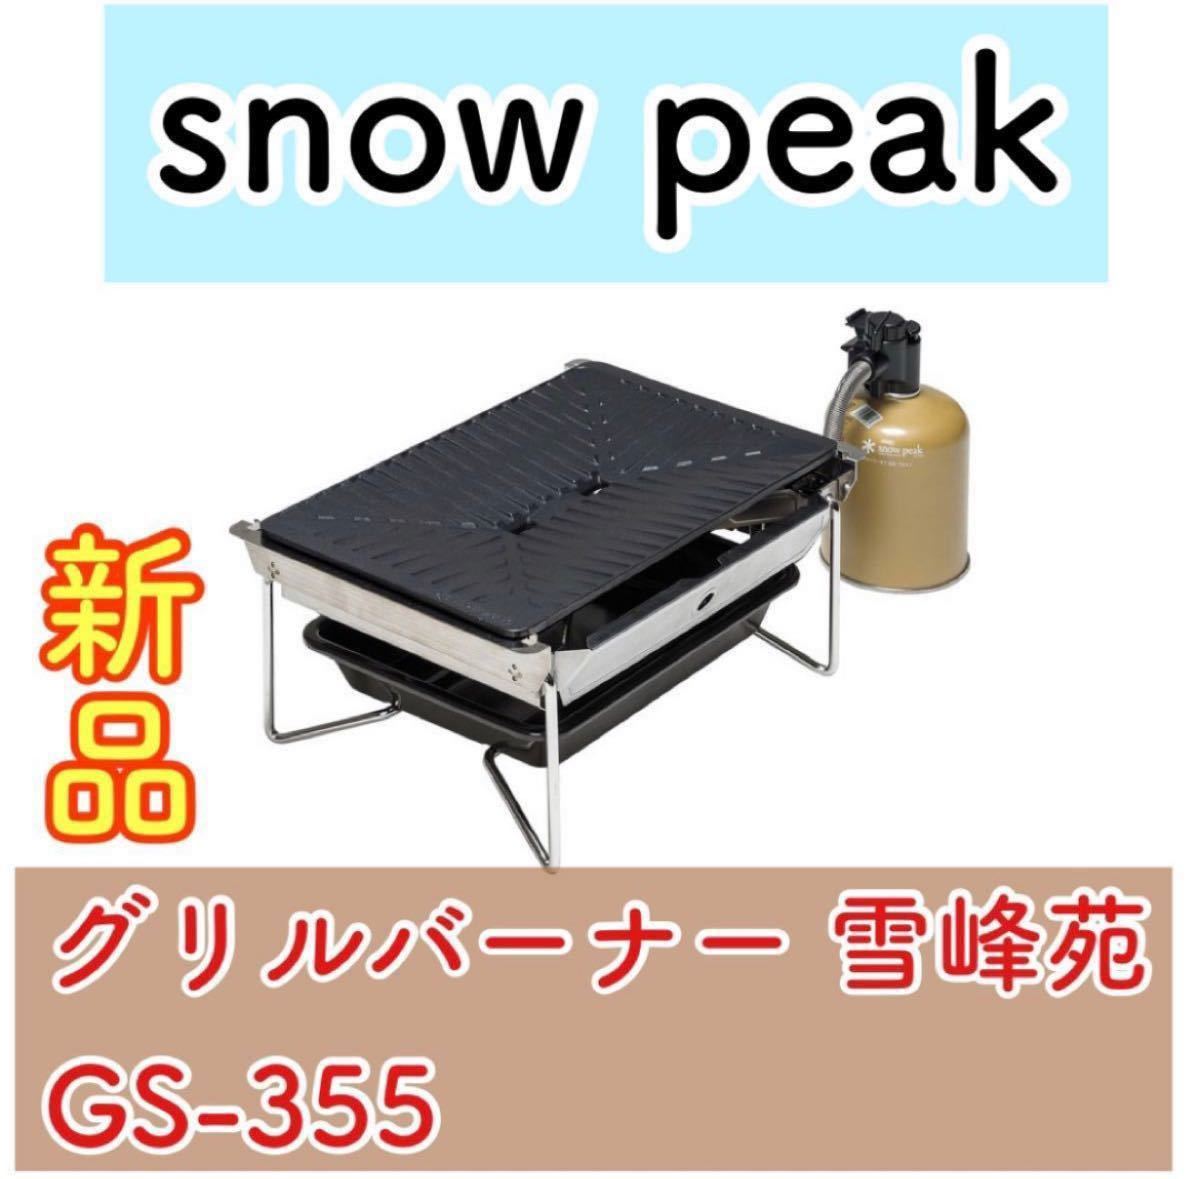 【新品未開封】スノーピーク グリルバーナー 雪峰苑 GS-355 snow peak